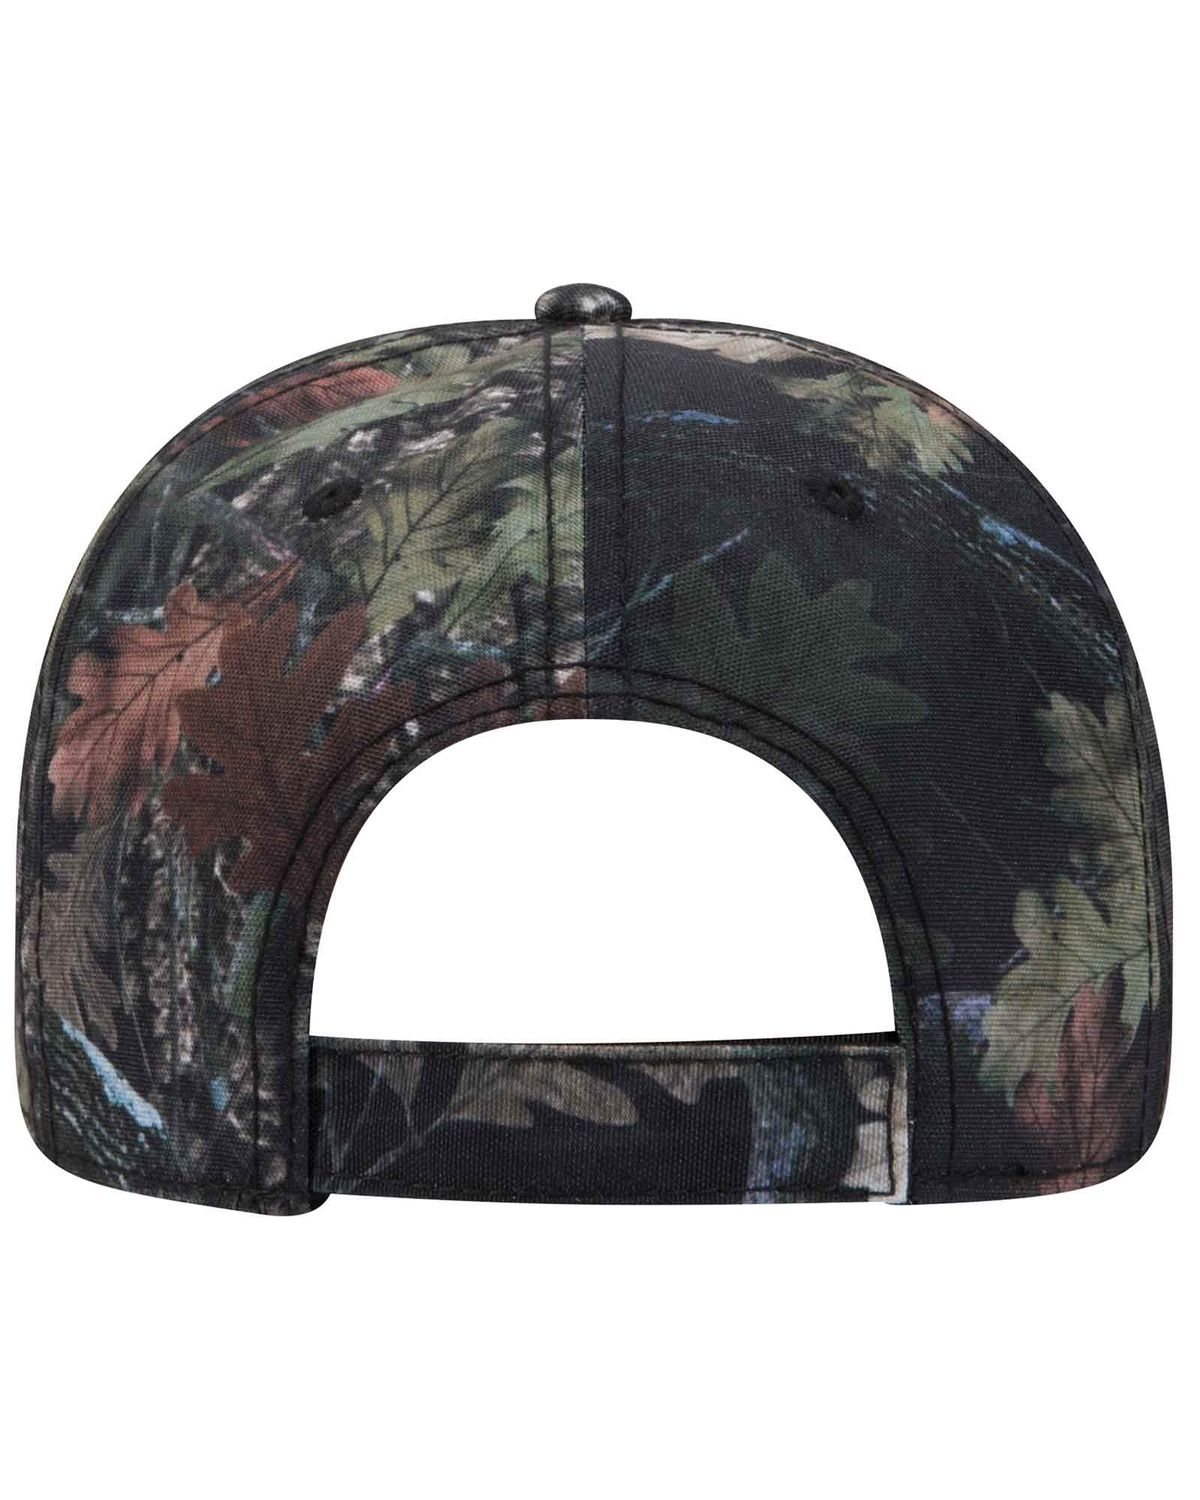 'OTTO 103 1263 Otto cap camouflage 6 panel low profile baseball cap'